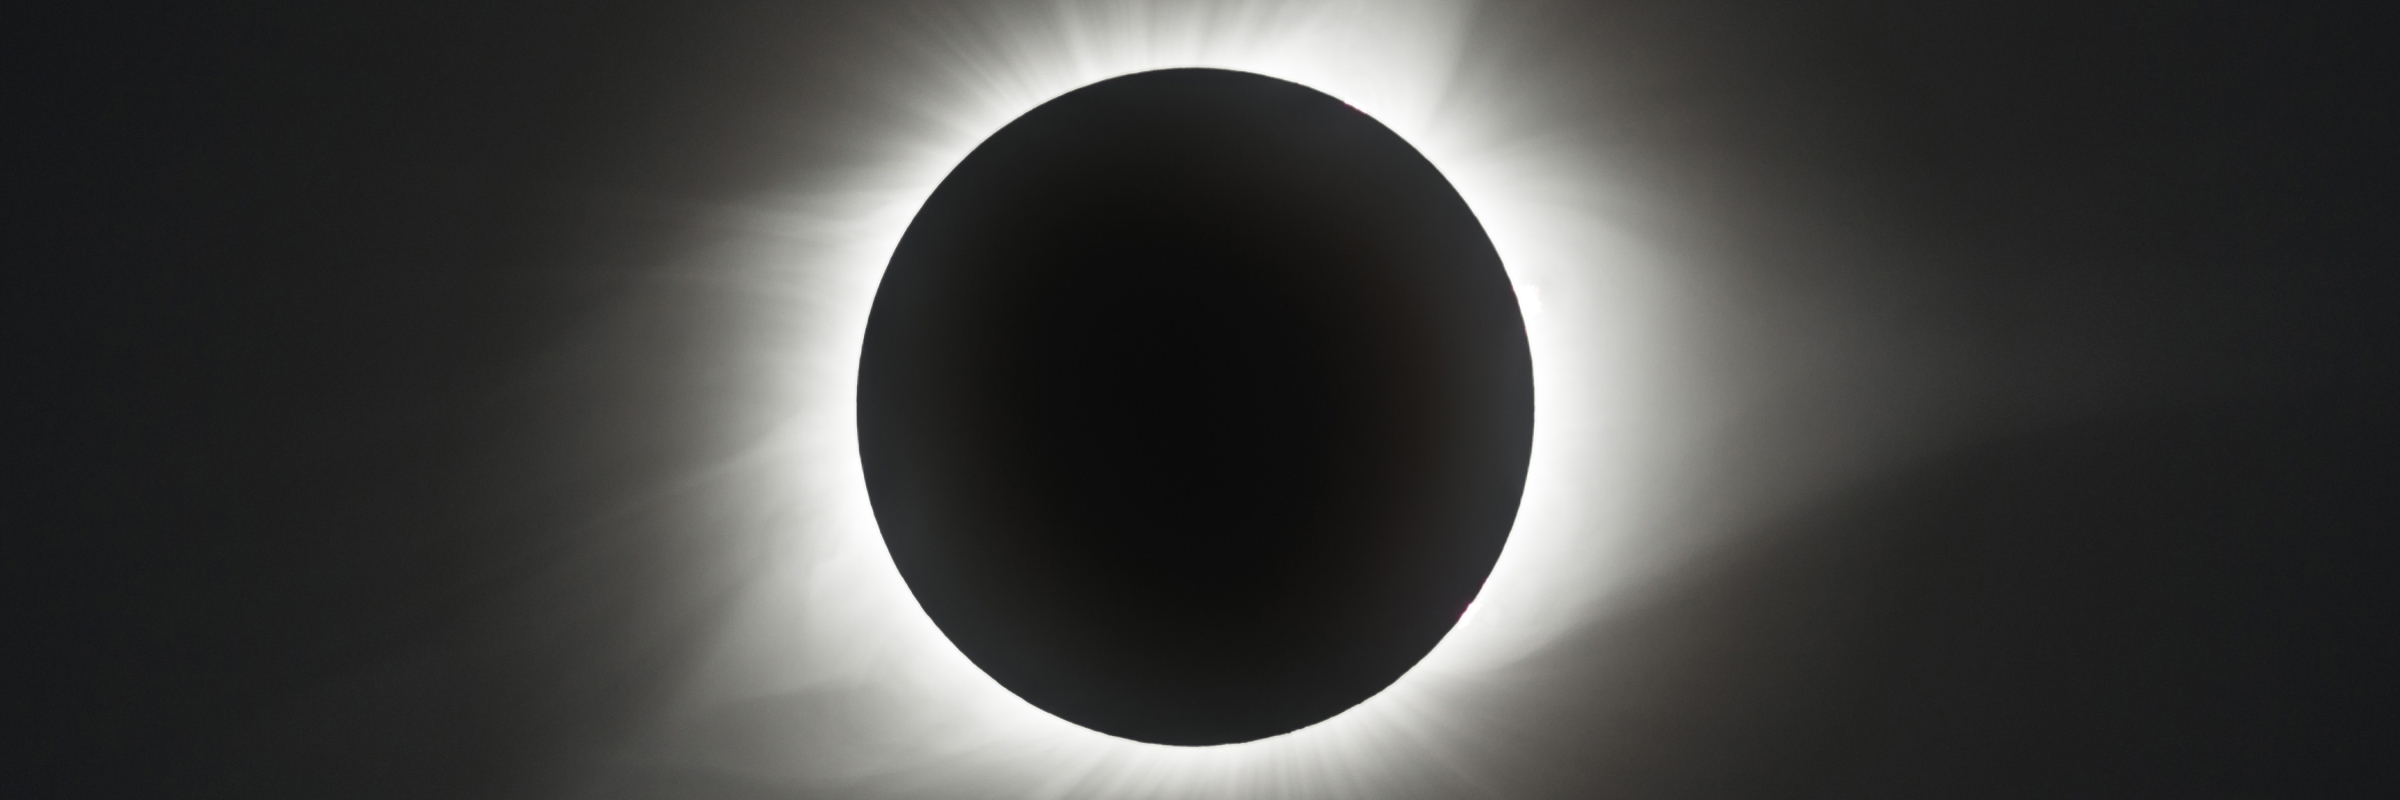 Solar Eclipse. Photo: ©2019 Fred Espenak, MrEclipse.com